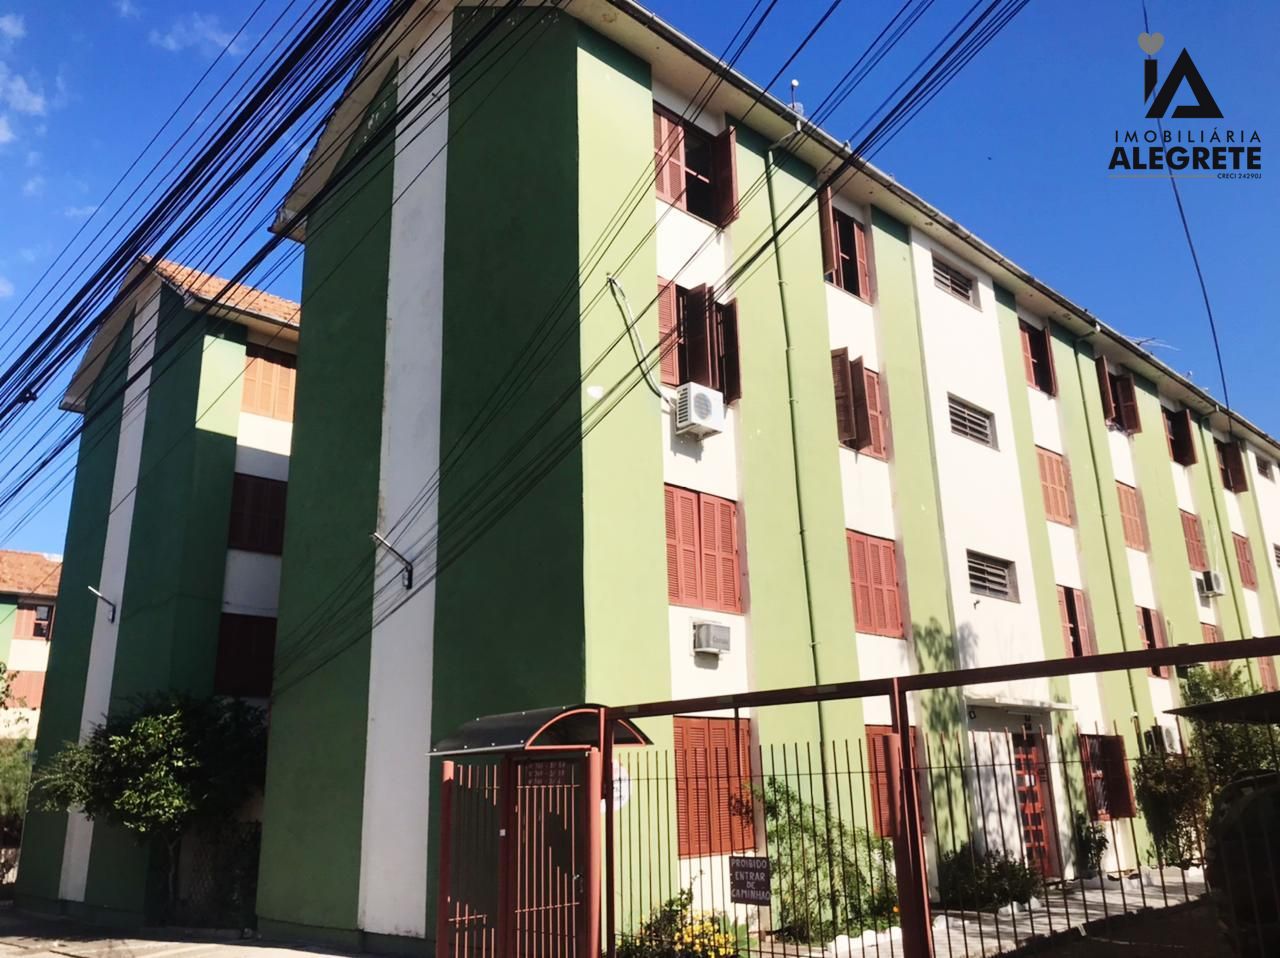 Apartamento  venda  no Cidade Alta - Alegrete, RS. Imveis